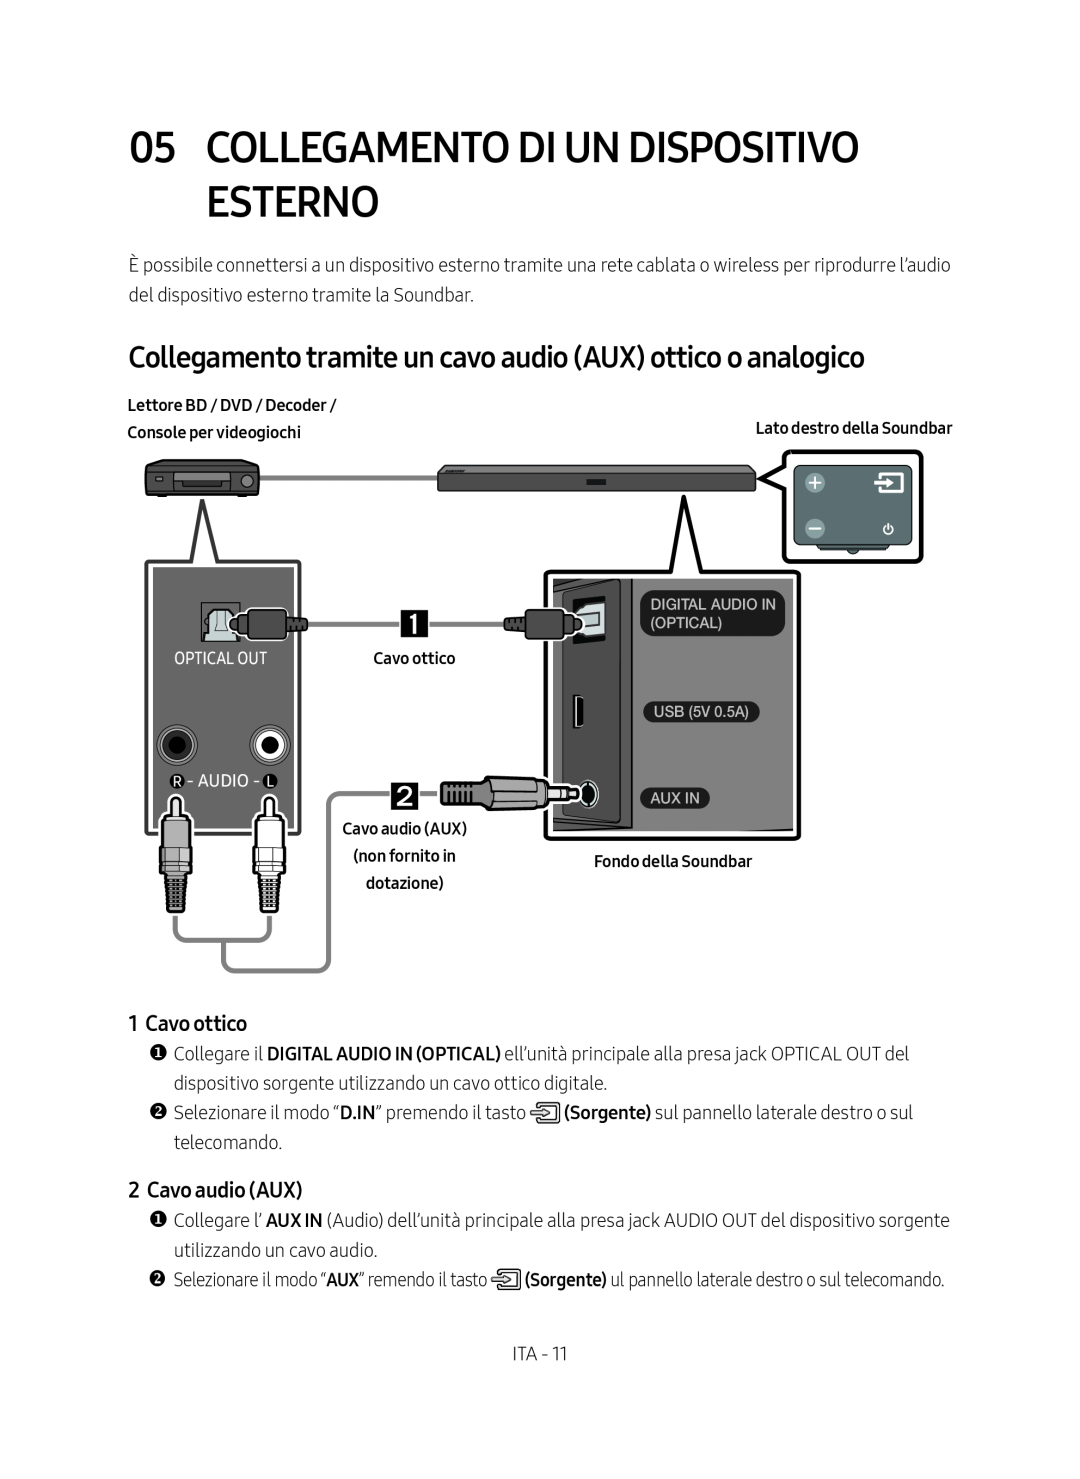 Samsung HW-M450/ZF manual Collegamento Di Un Dispositivo Esterno, Collegamento tramite un cavo audio AUX ottico o analogico 